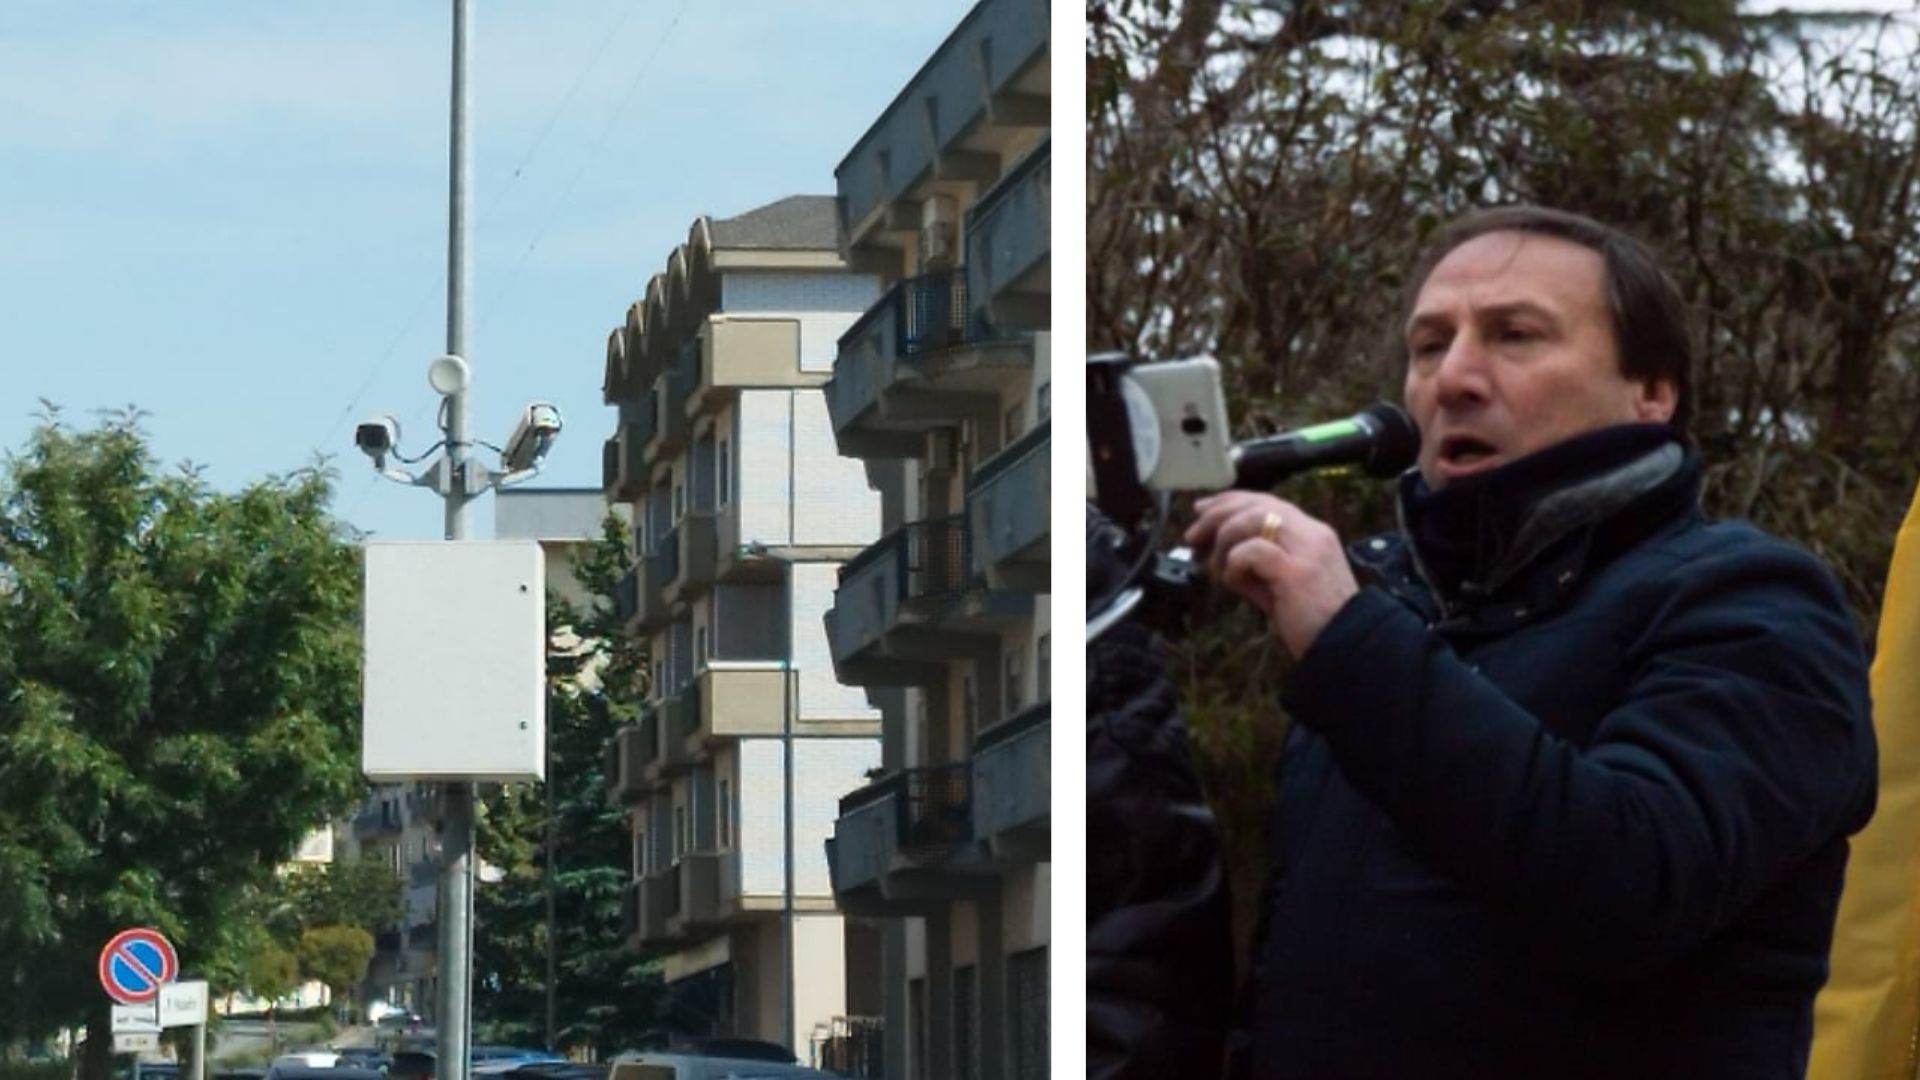 Caltanissetta – Smart CL. Riggi (Forza del Popolo): “con le telecamere addio a privacy e salute dei cittadini”